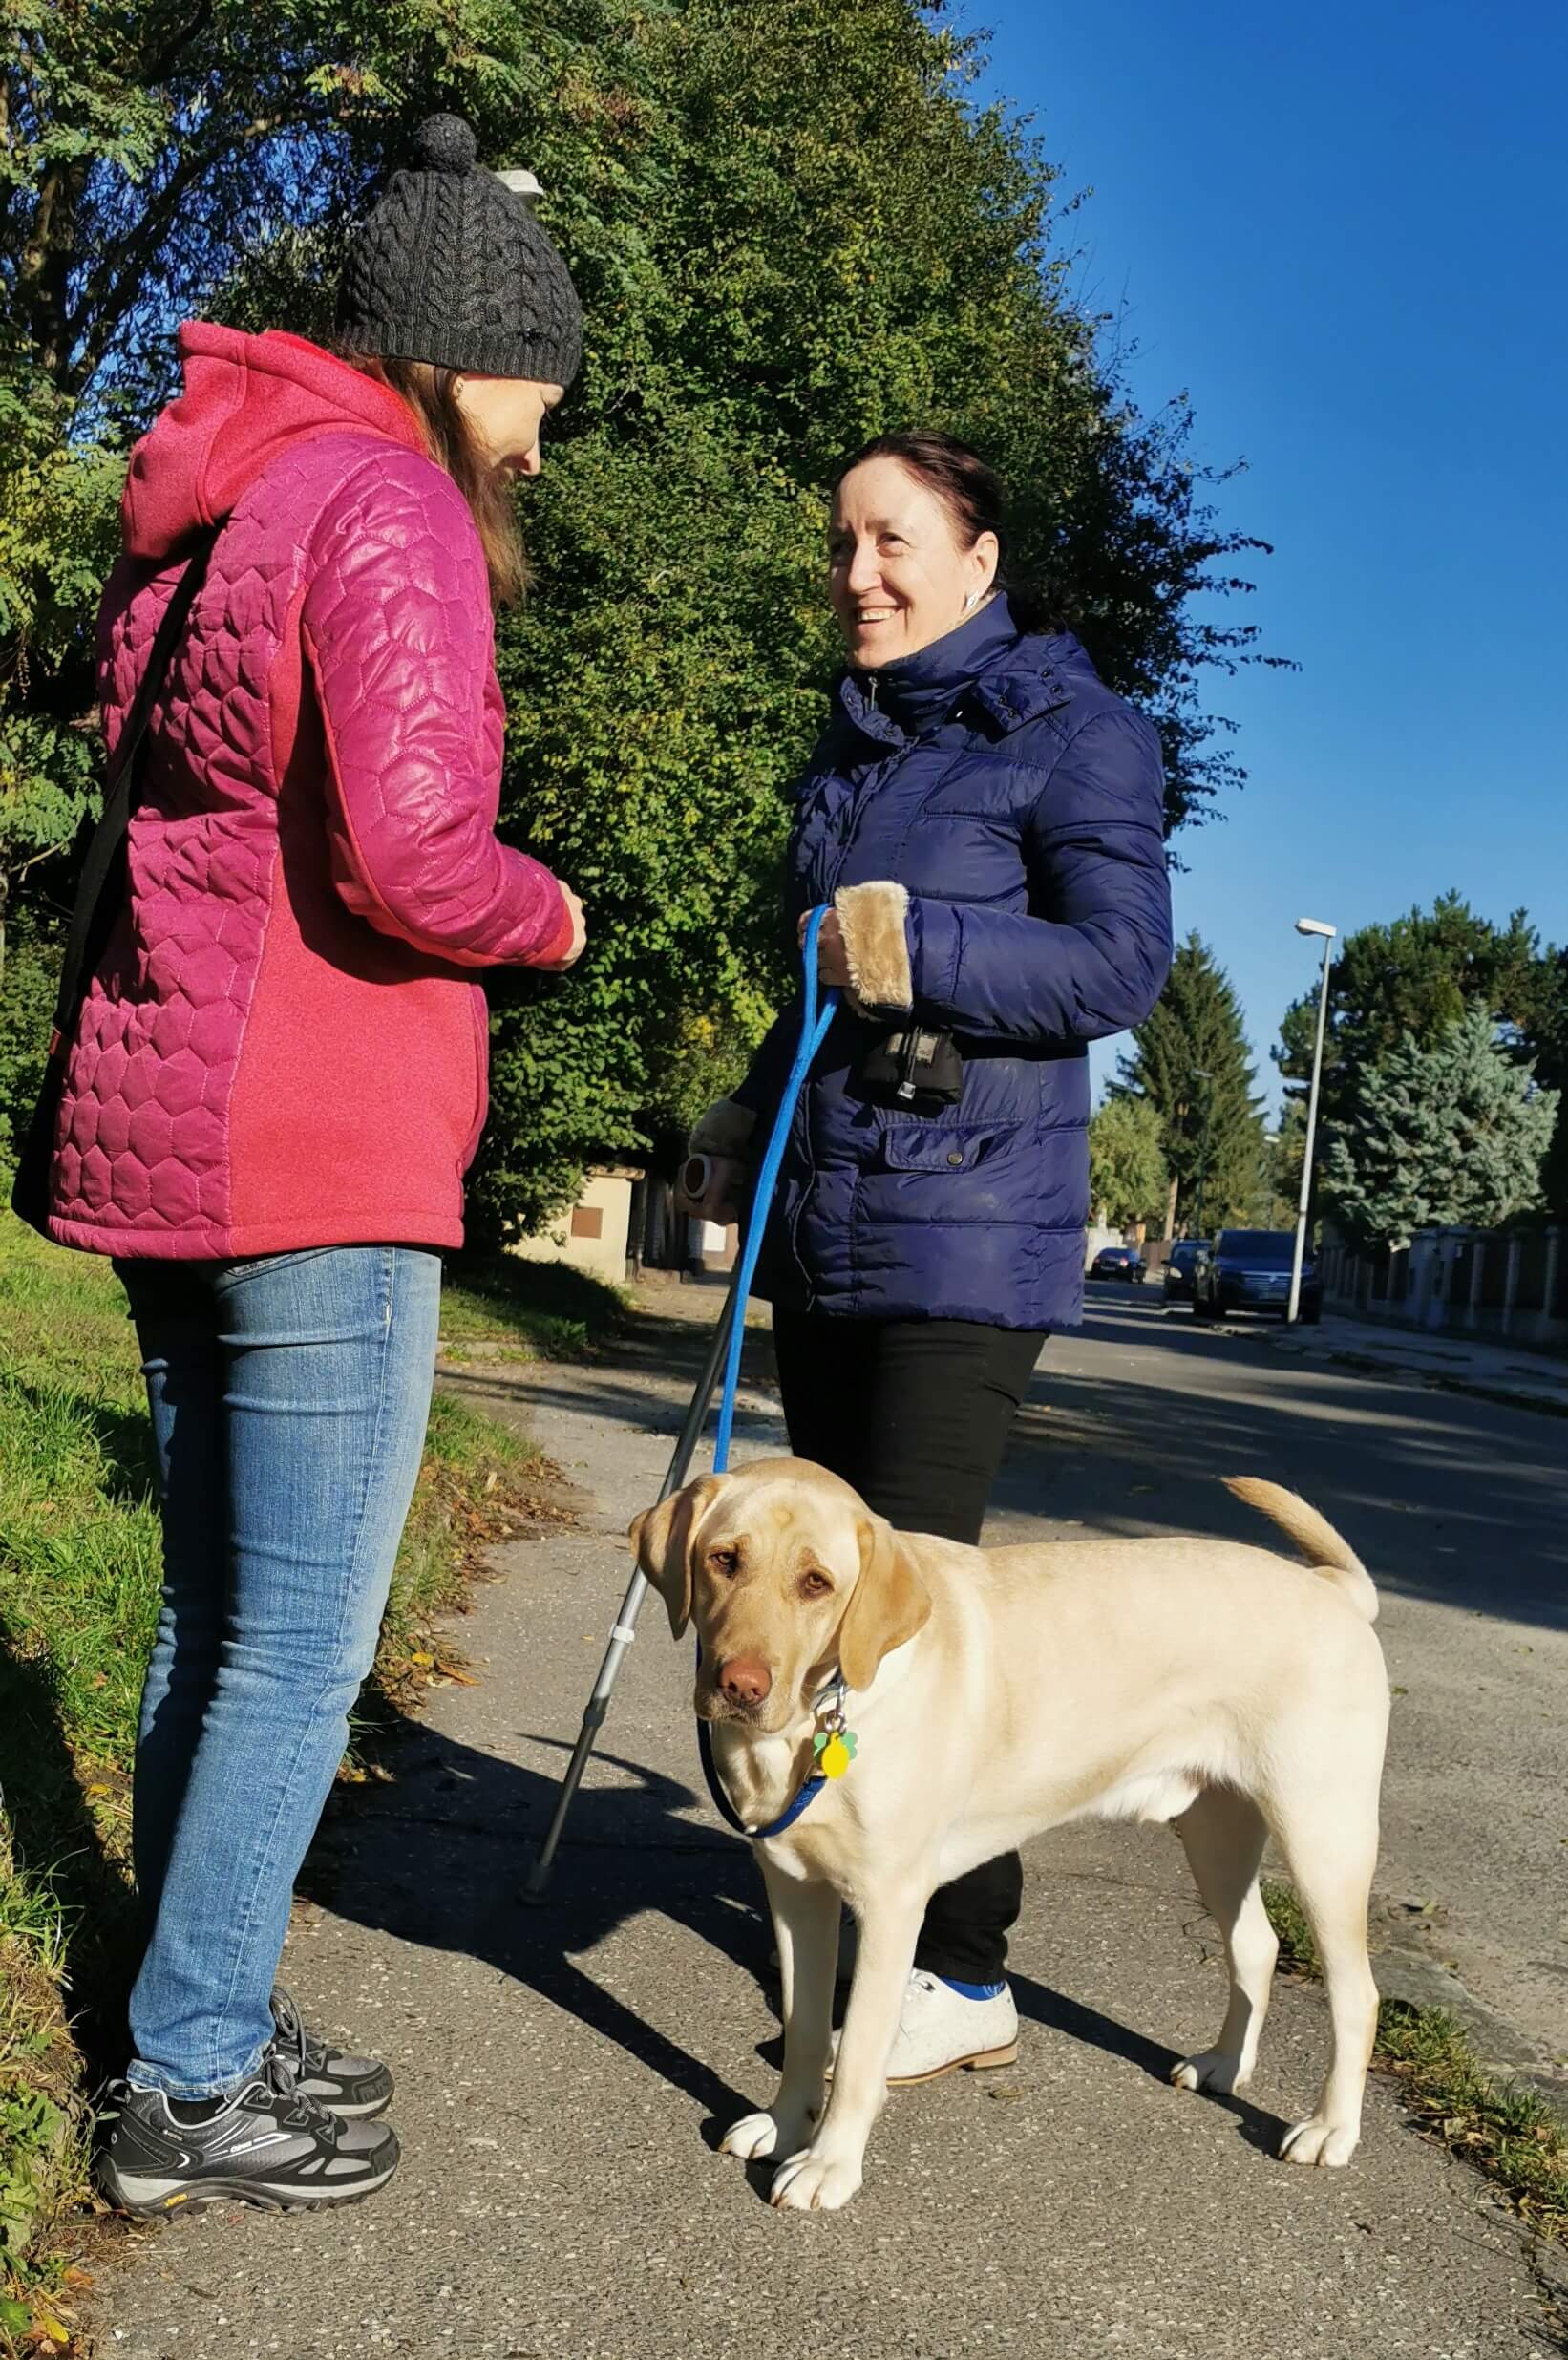 Na slnkom zaliatej ulici v parku drží záujemkyňa o vodiaceho psa na vodítku žltého labradora , ktorý vrtí radostne chvostom. Záujemkyňa sa rozpráva s cvičiteľkou a obe sa usmievajú.